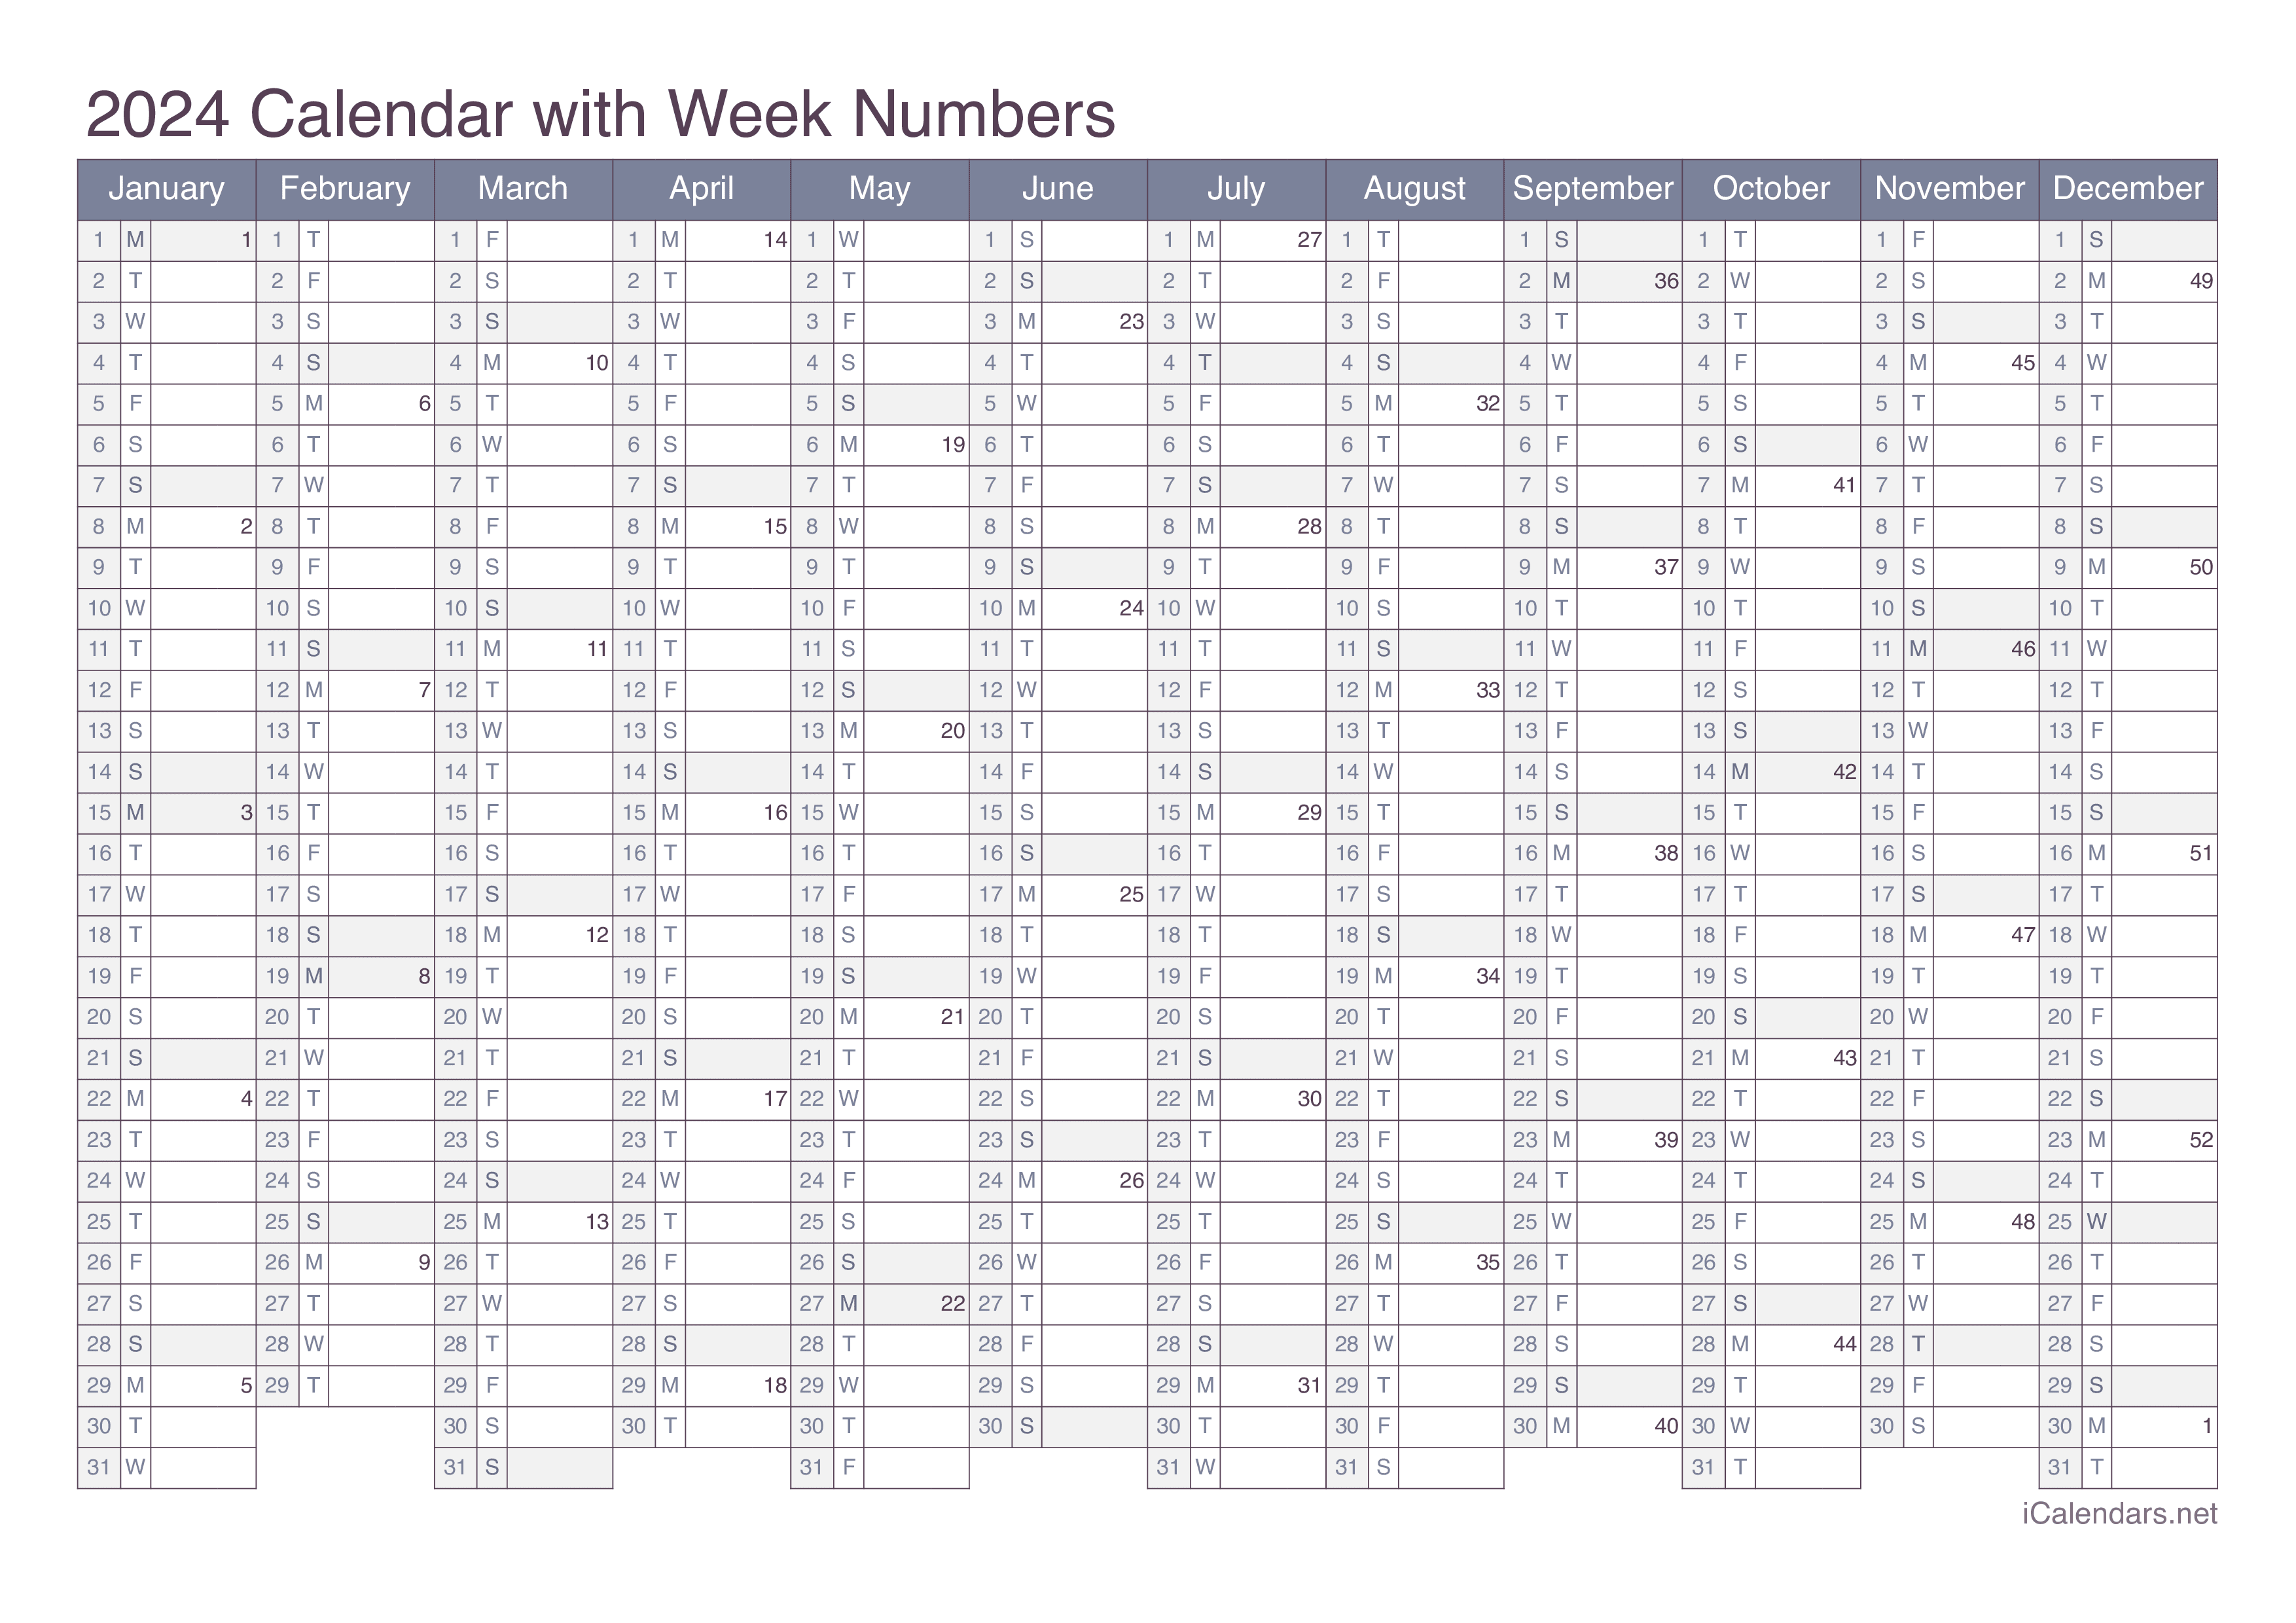 2024 Calendar with week numbers - Office